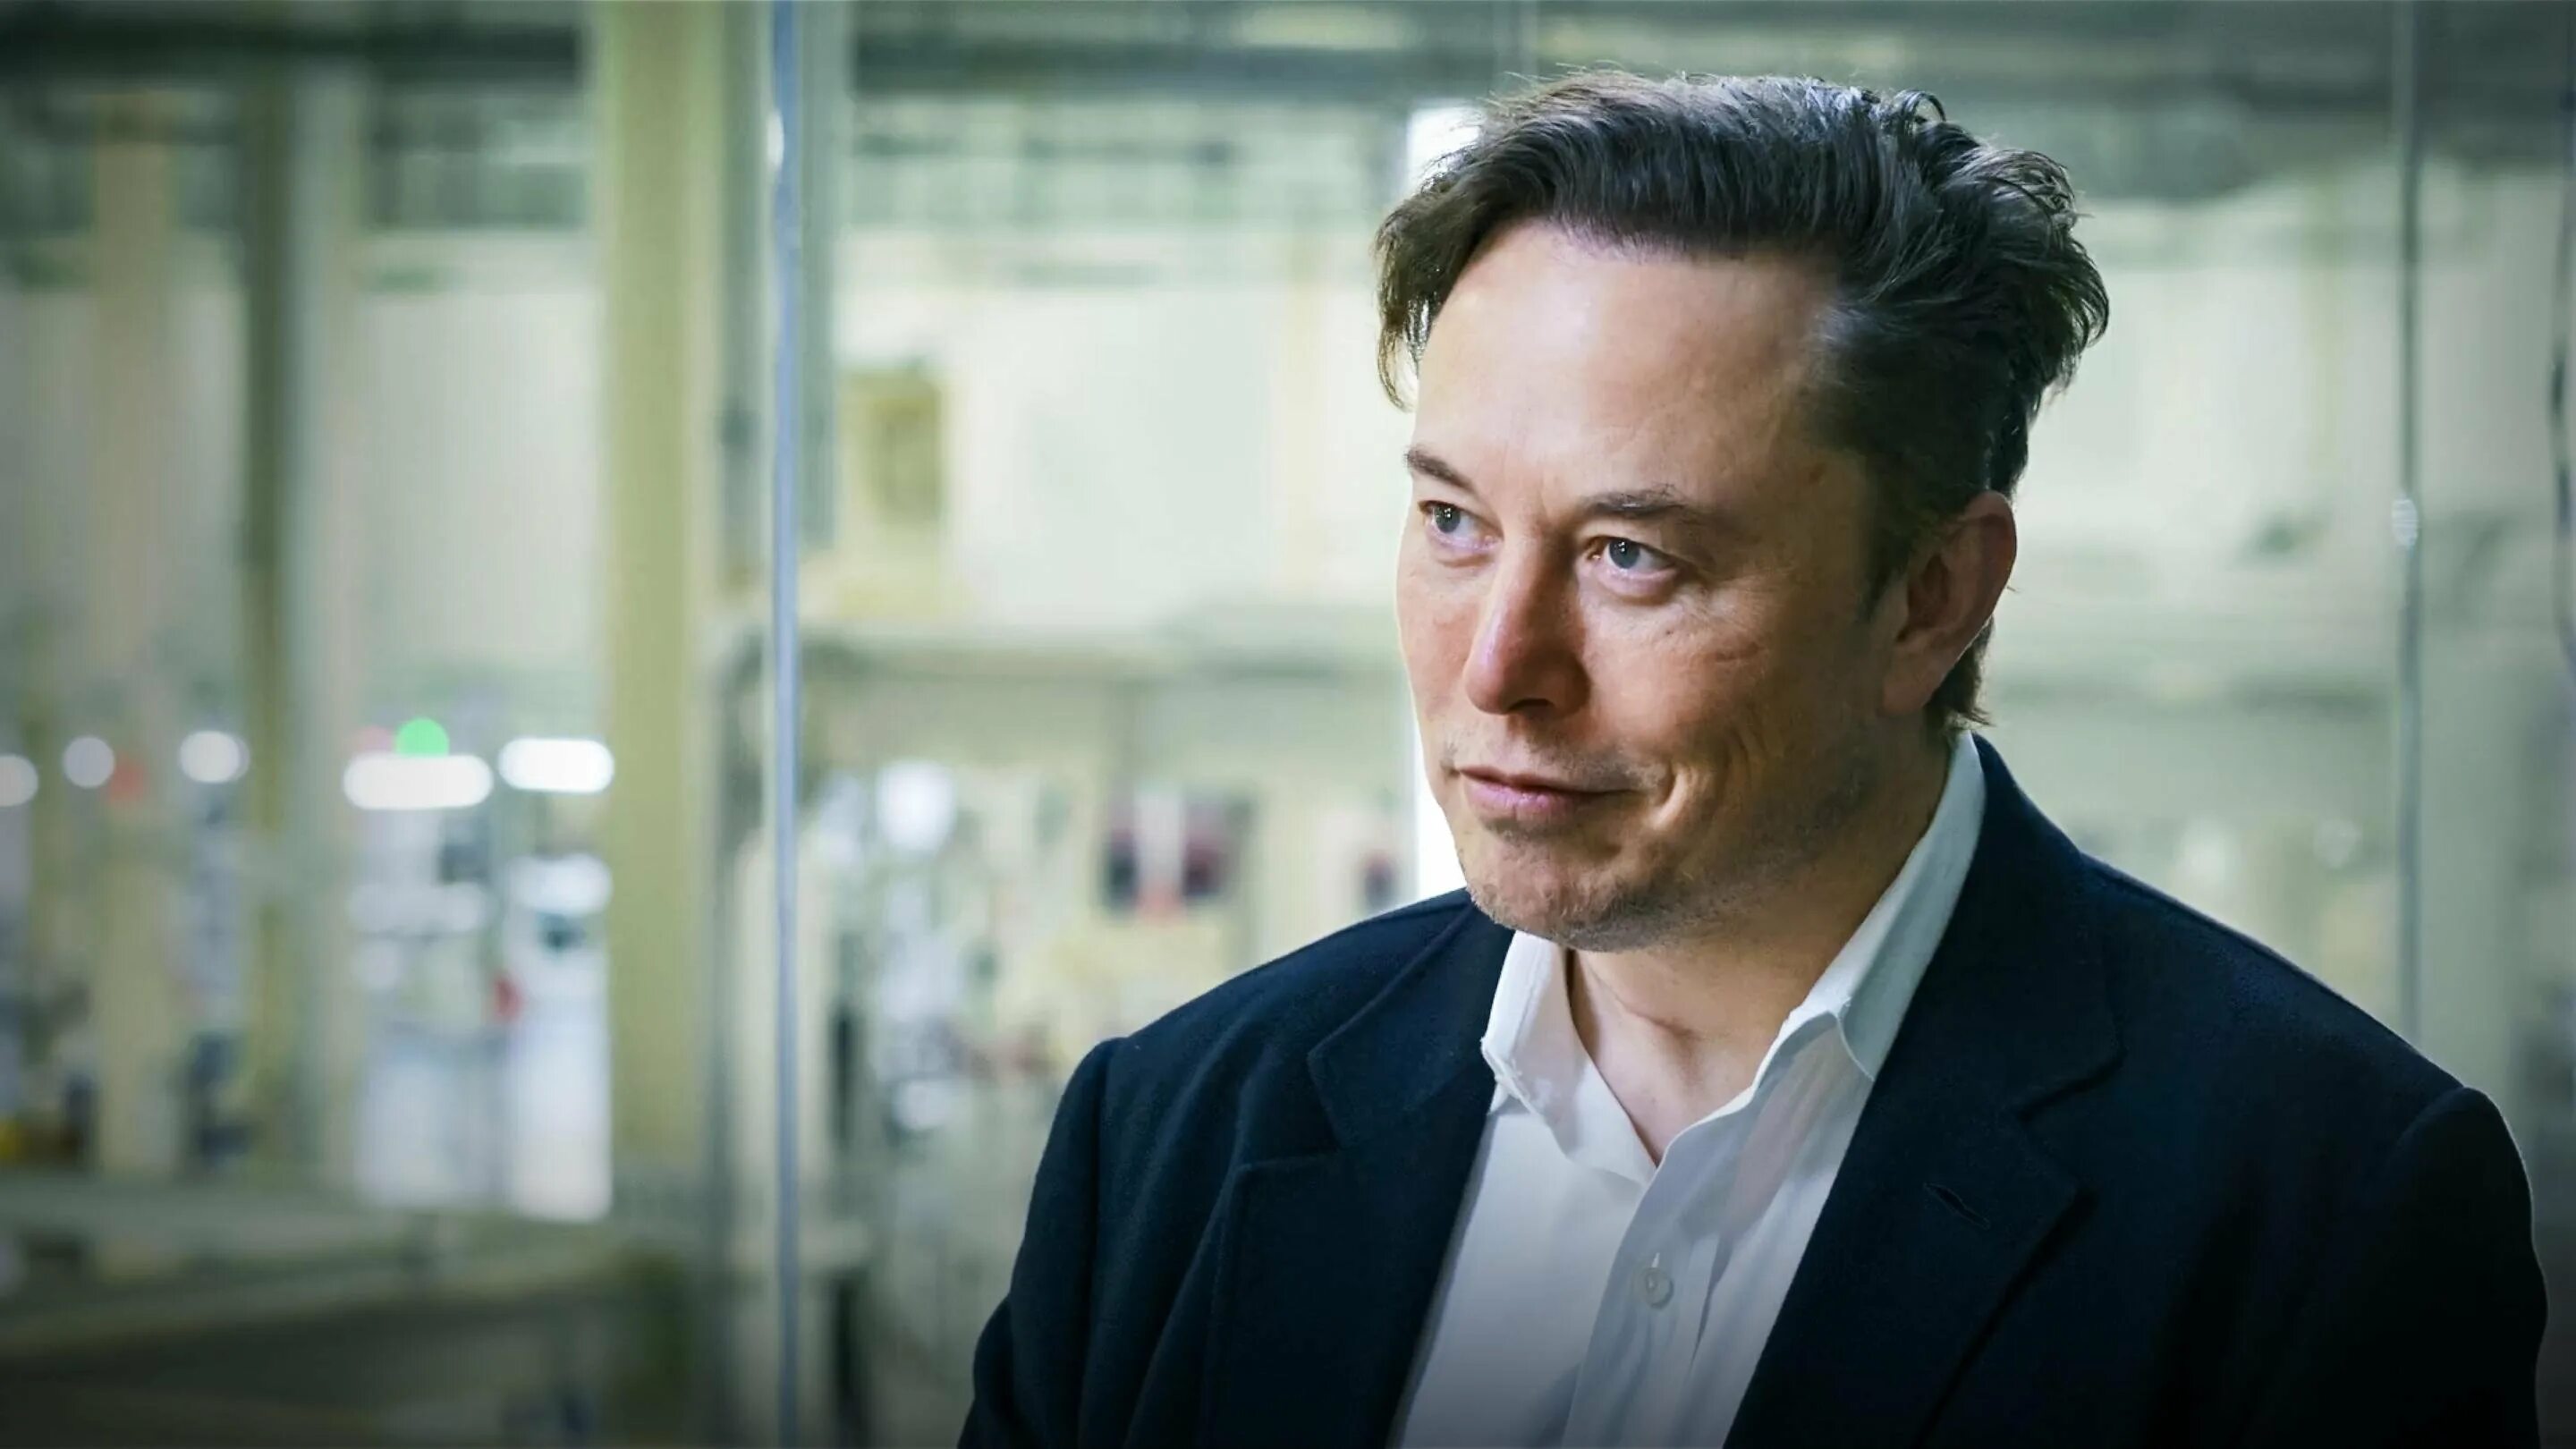 Илон Маск. Илон Маск (Elon Musk). Elon Musk фото. Илон Маск 2016. Маск волос